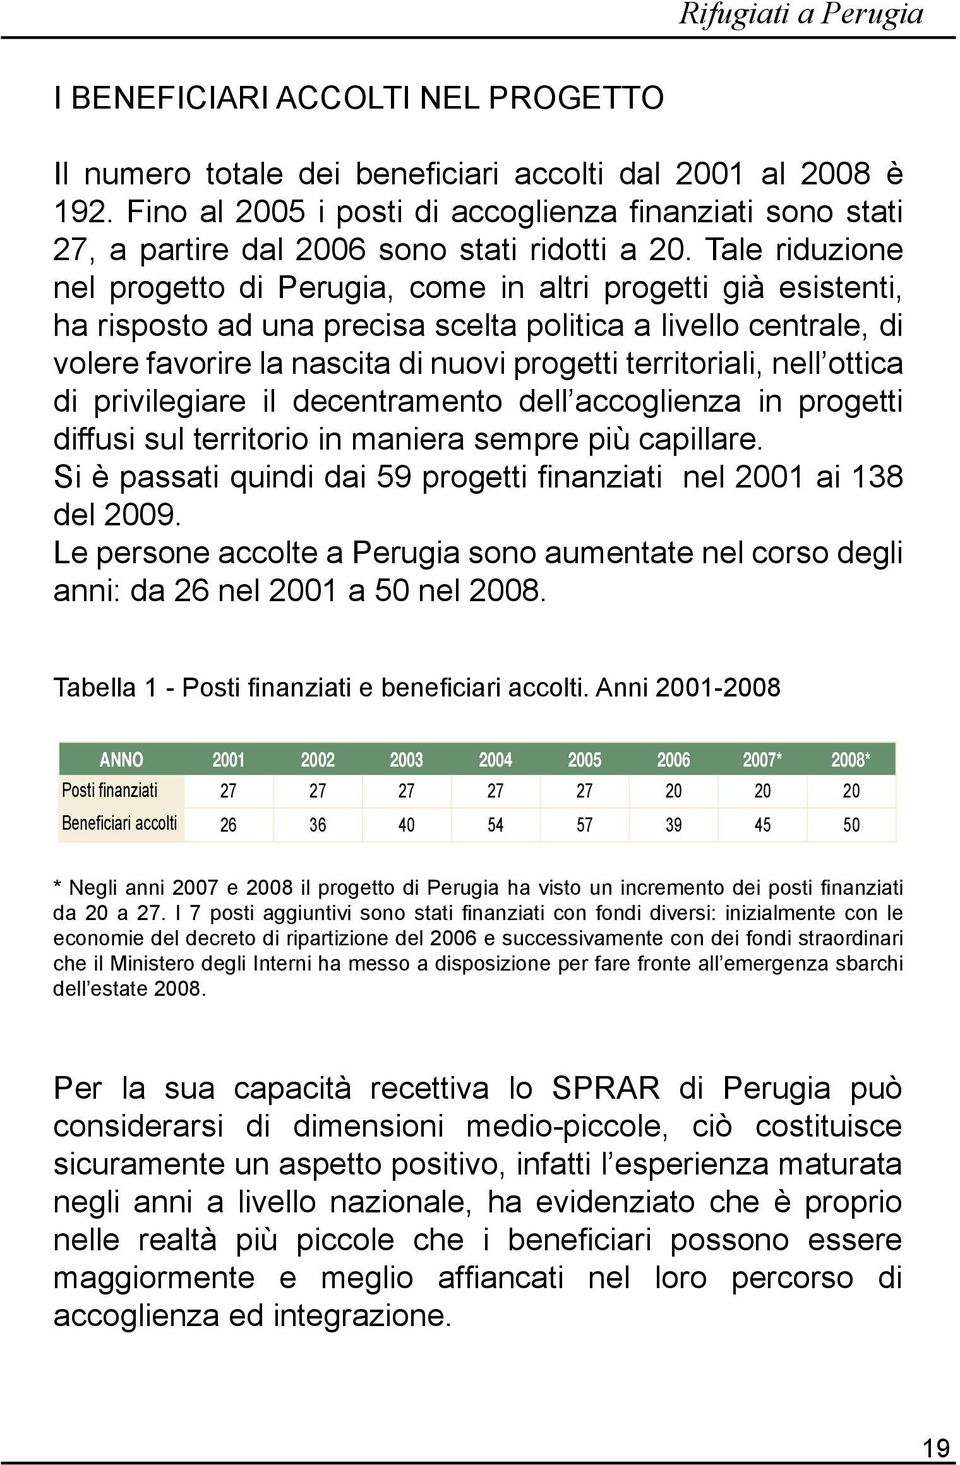 Tale riduzione nel progetto di Perugia, come in altri progetti già esistenti, ha risposto ad una precisa scelta politica a livello centrale, di volere favorire la nascita di nuovi progetti